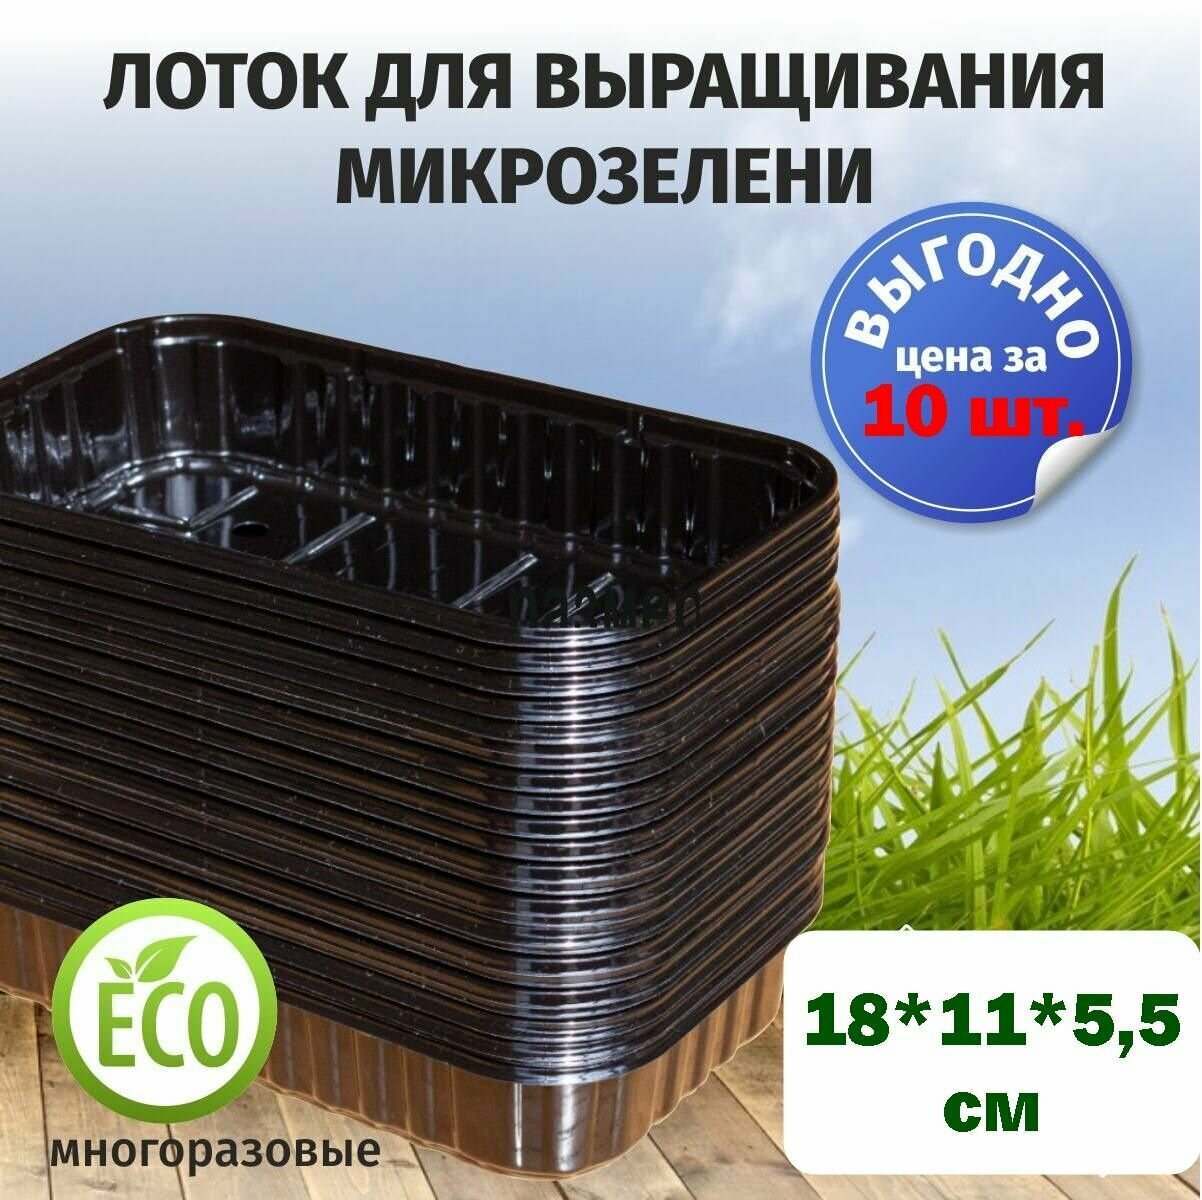 Лотки для выращивания свежей микрозелени черного цвета / 180*110*55 / 10 штук пластиковые контейнеры для проращивания рассады микрозелени